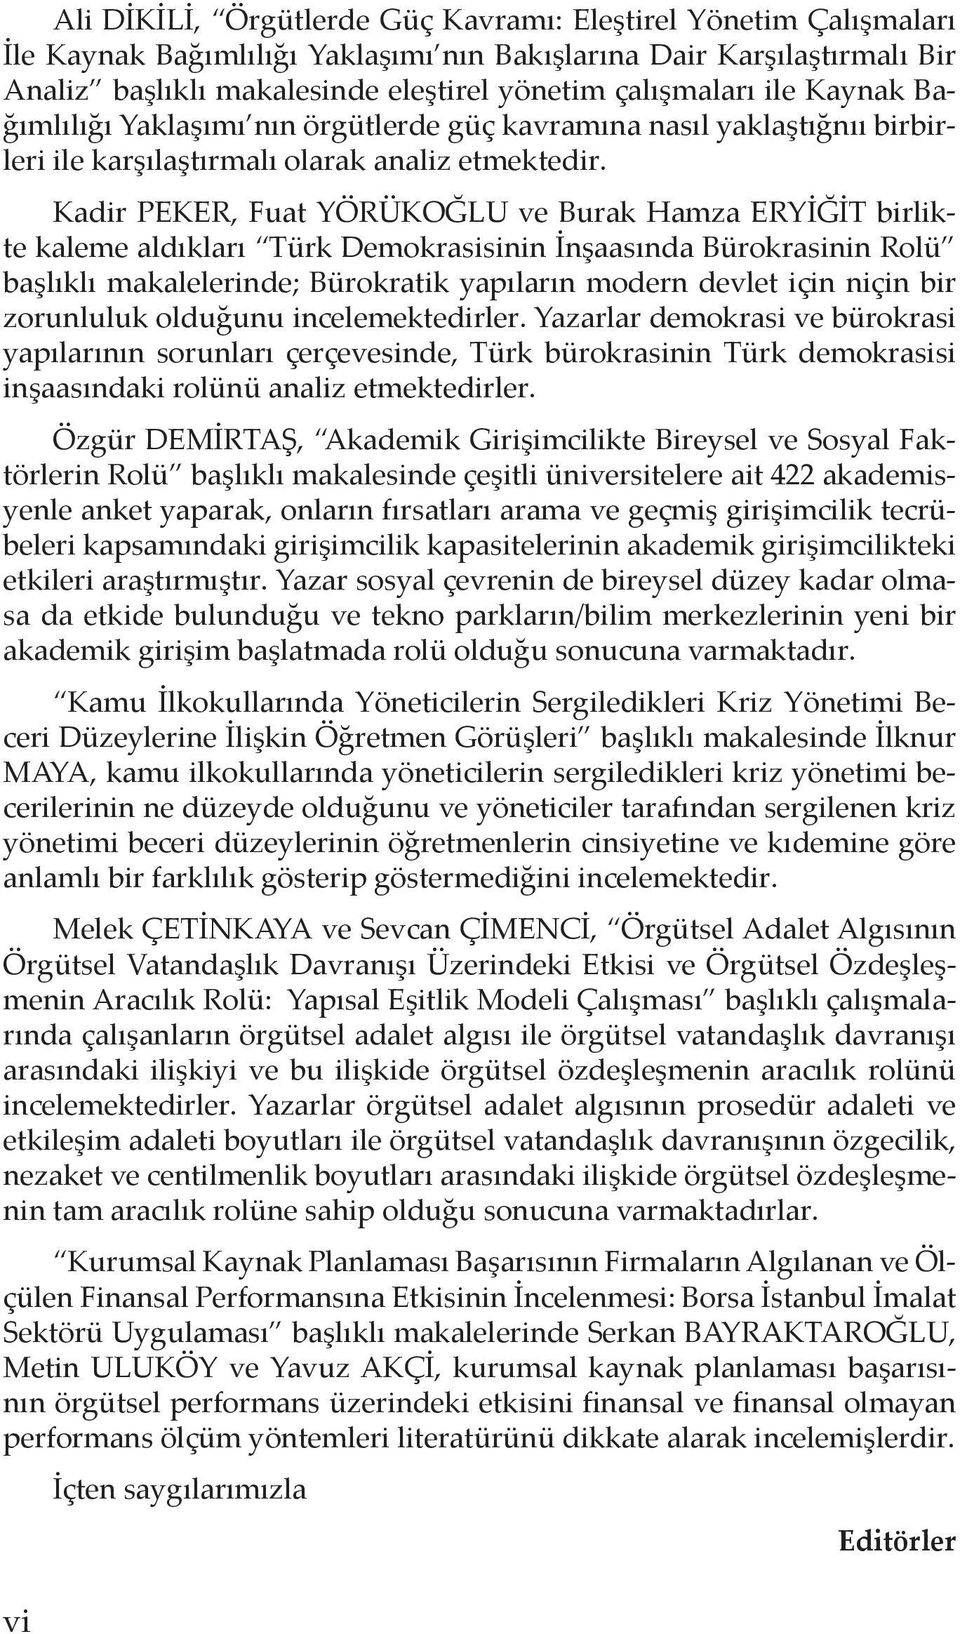 Kadir PEKER, Fuat YÖRÜKOĞLU ve Burak Hamza ERYİĞİT birlikte kaleme aldıkları Türk Demokrasisinin İnşaasında Bürokrasinin Rolü başlıklı makalelerinde; Bürokratik yapıların modern devlet için niçin bir